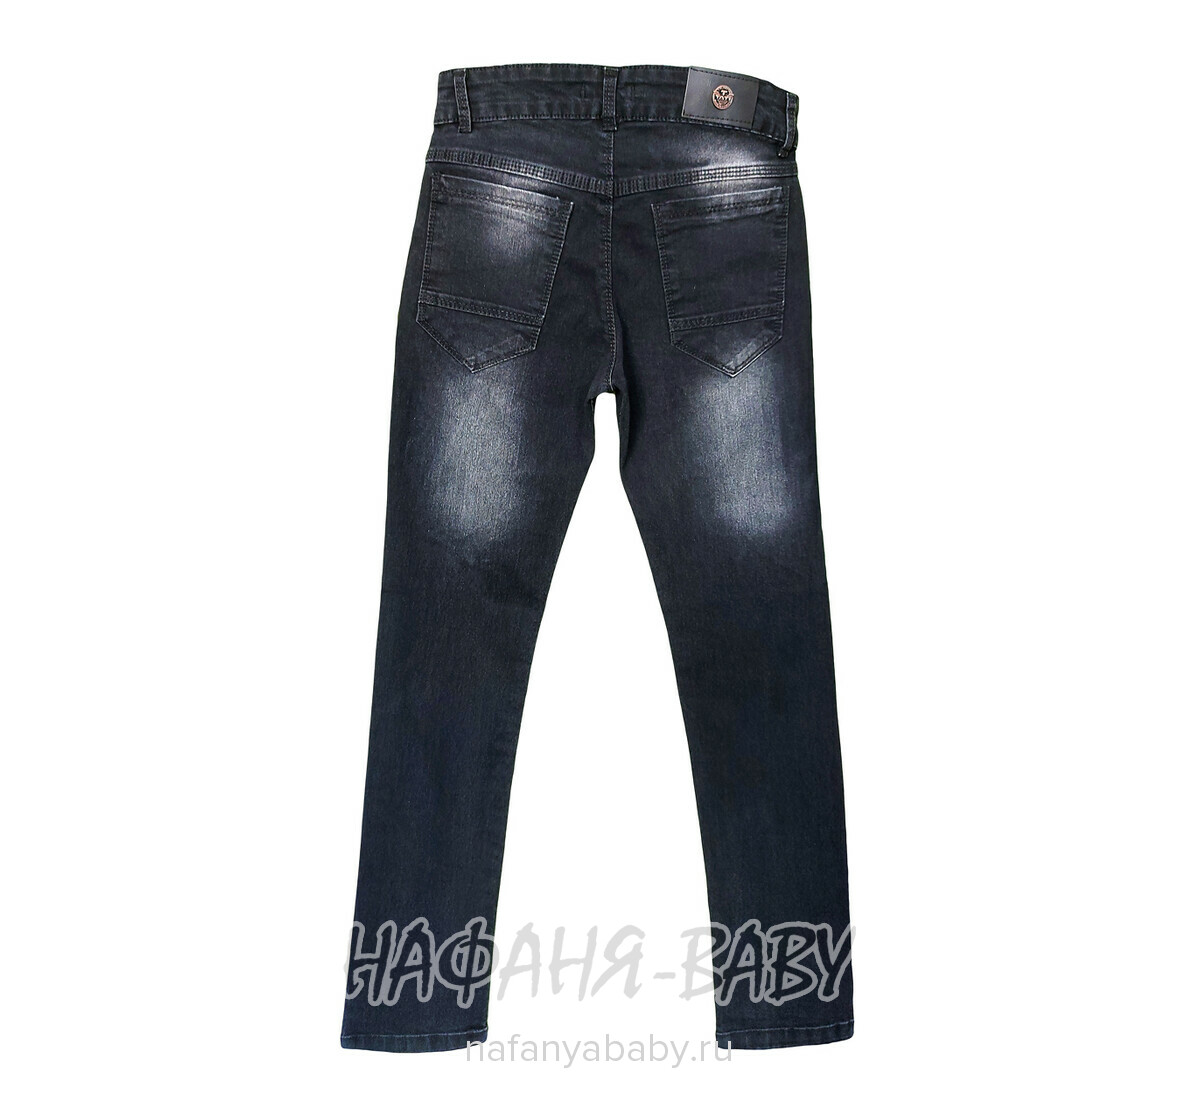 Подростковые джинсы TATI Jeans, купить в интернет магазине Нафаня. арт: 6101.